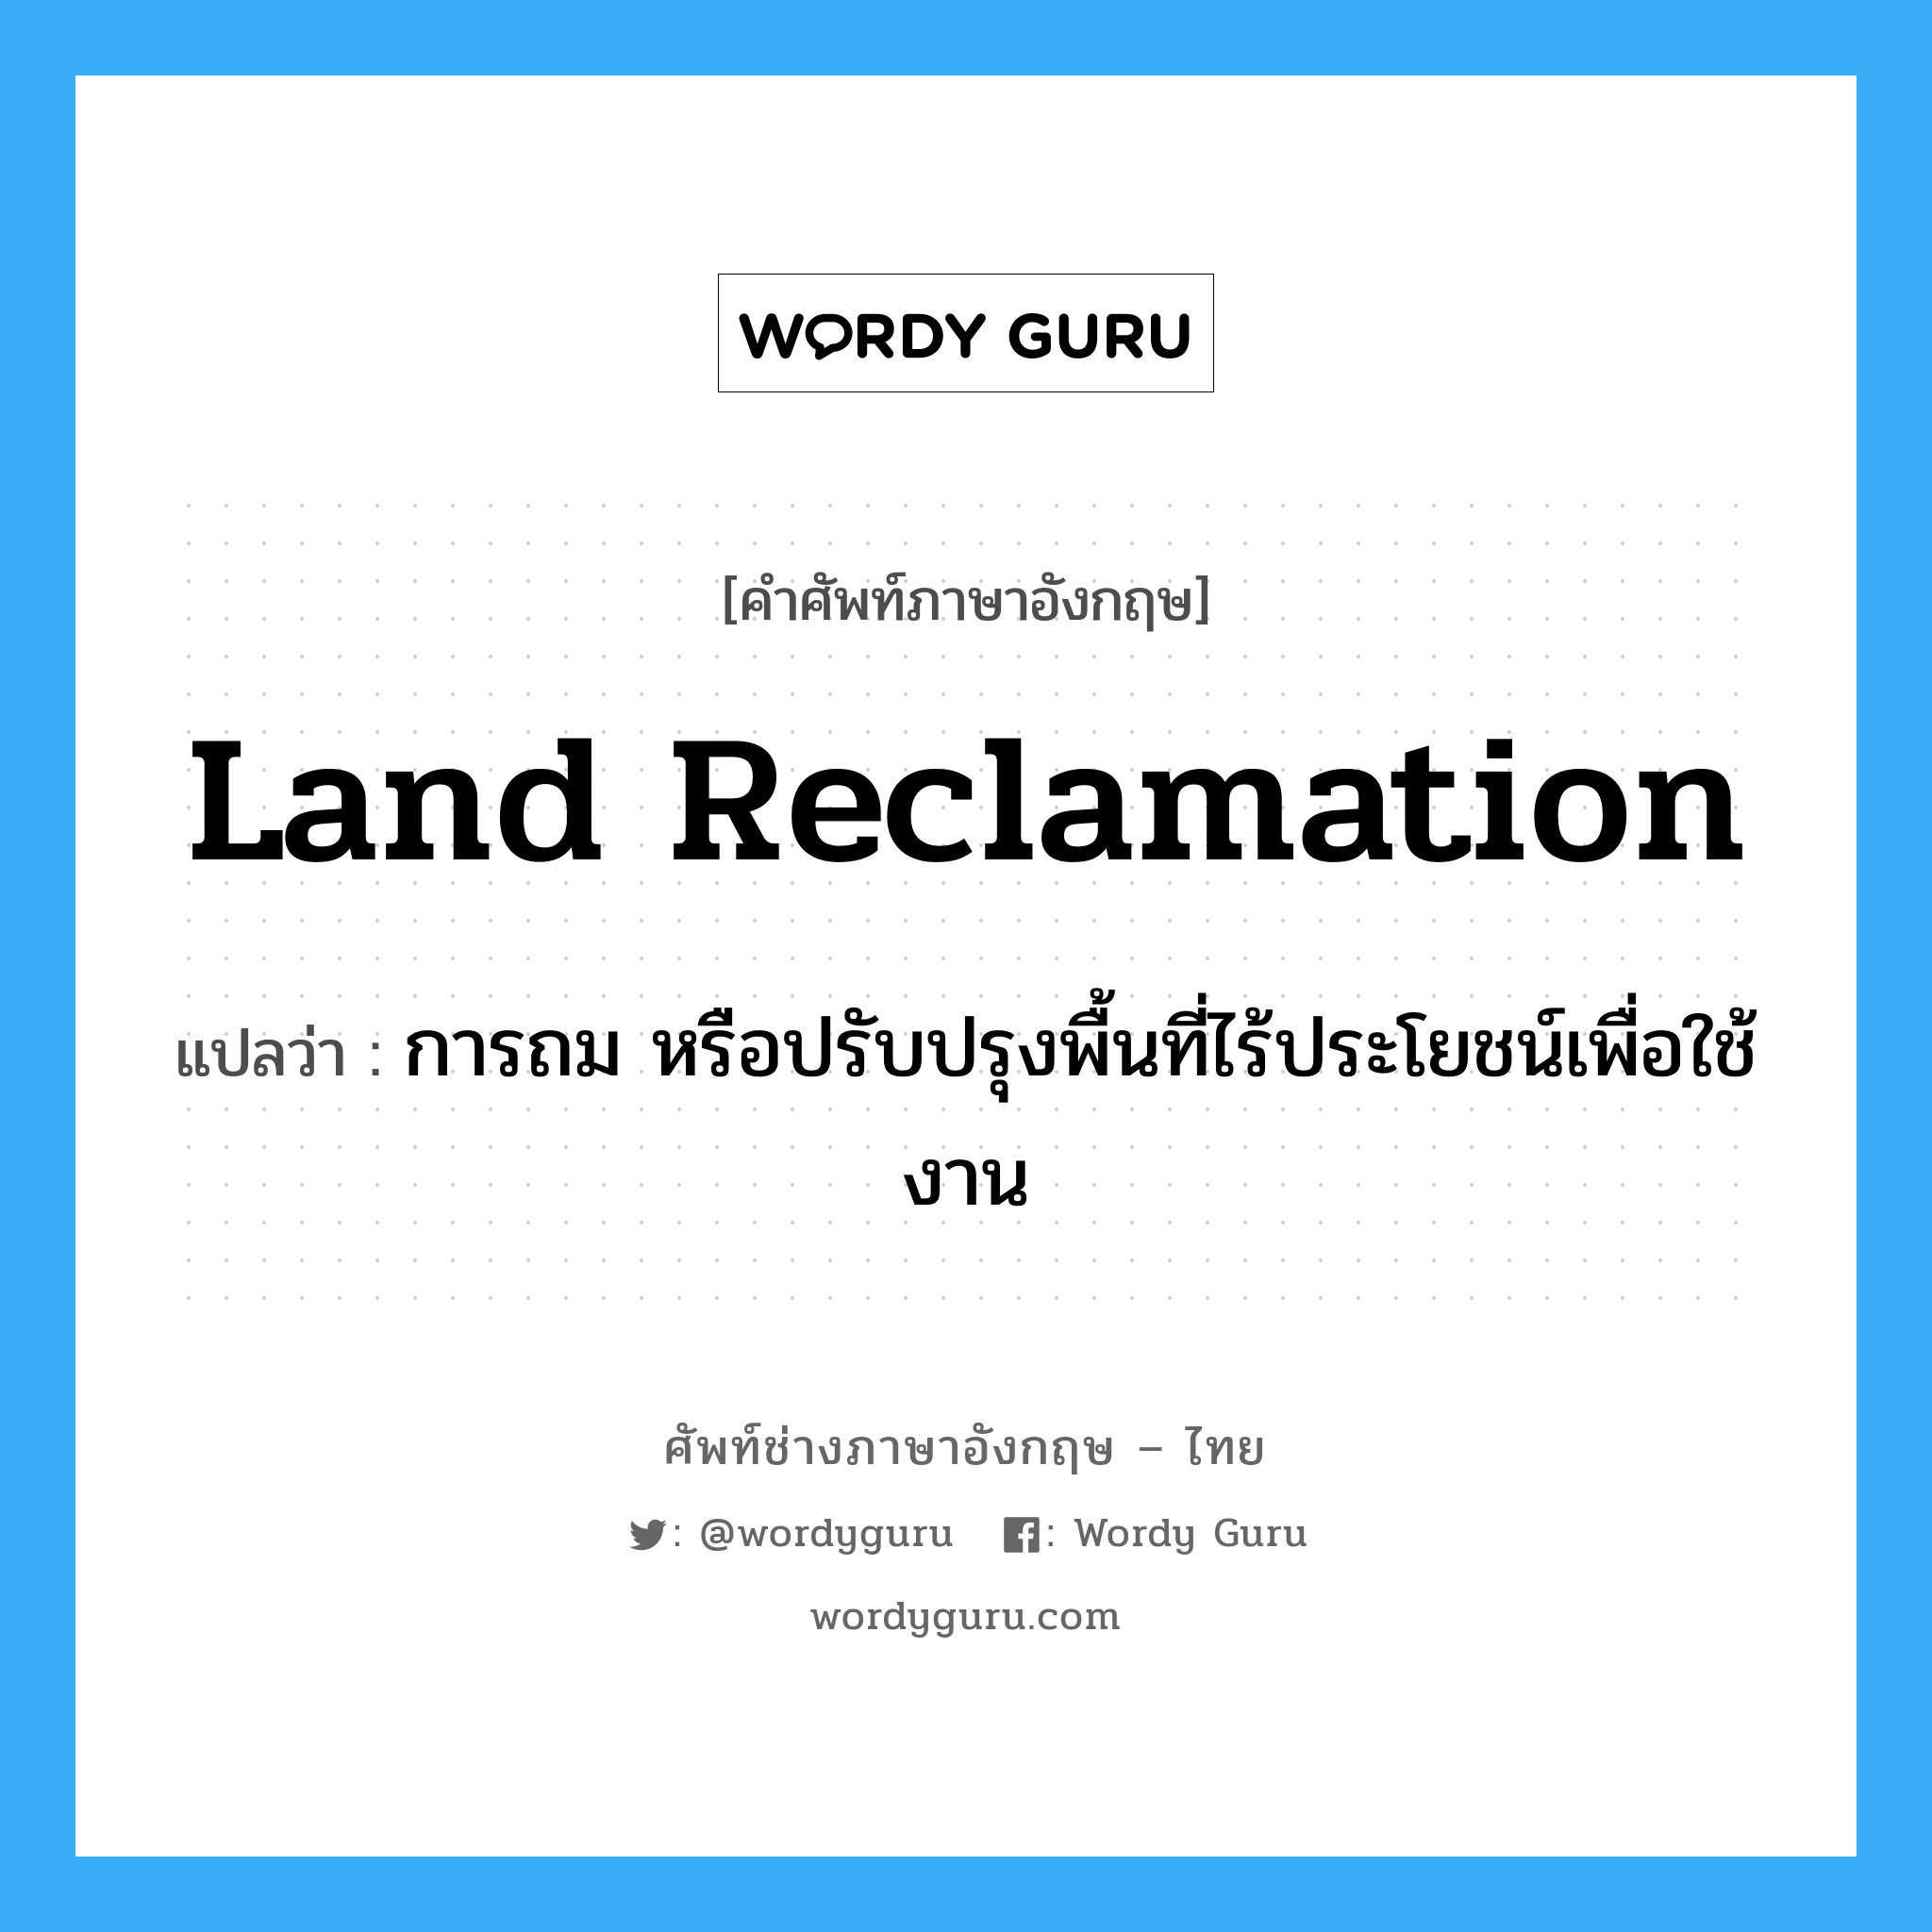 land reclamation แปลว่า?, คำศัพท์ช่างภาษาอังกฤษ - ไทย land reclamation คำศัพท์ภาษาอังกฤษ land reclamation แปลว่า การถม หรือปรับปรุงพื้นที่ไร้ประโยชน์เพื่อใช้งาน